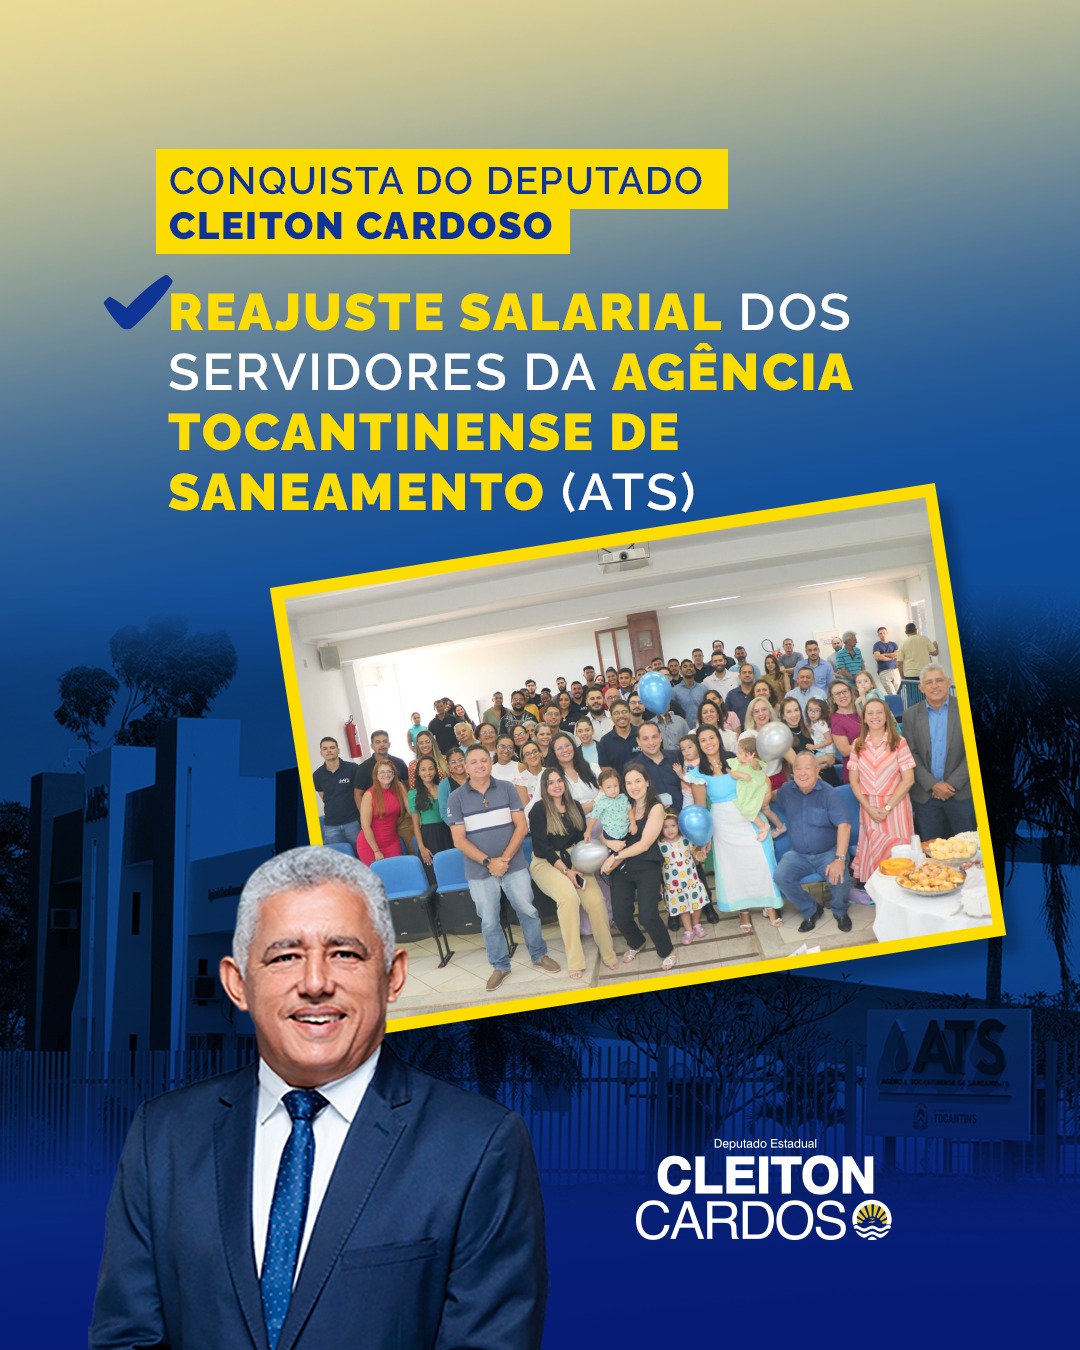 Deputado Cleiton Cardoso garante novo reajuste salarial para servidores da Agência Tocantinense de Saneamento